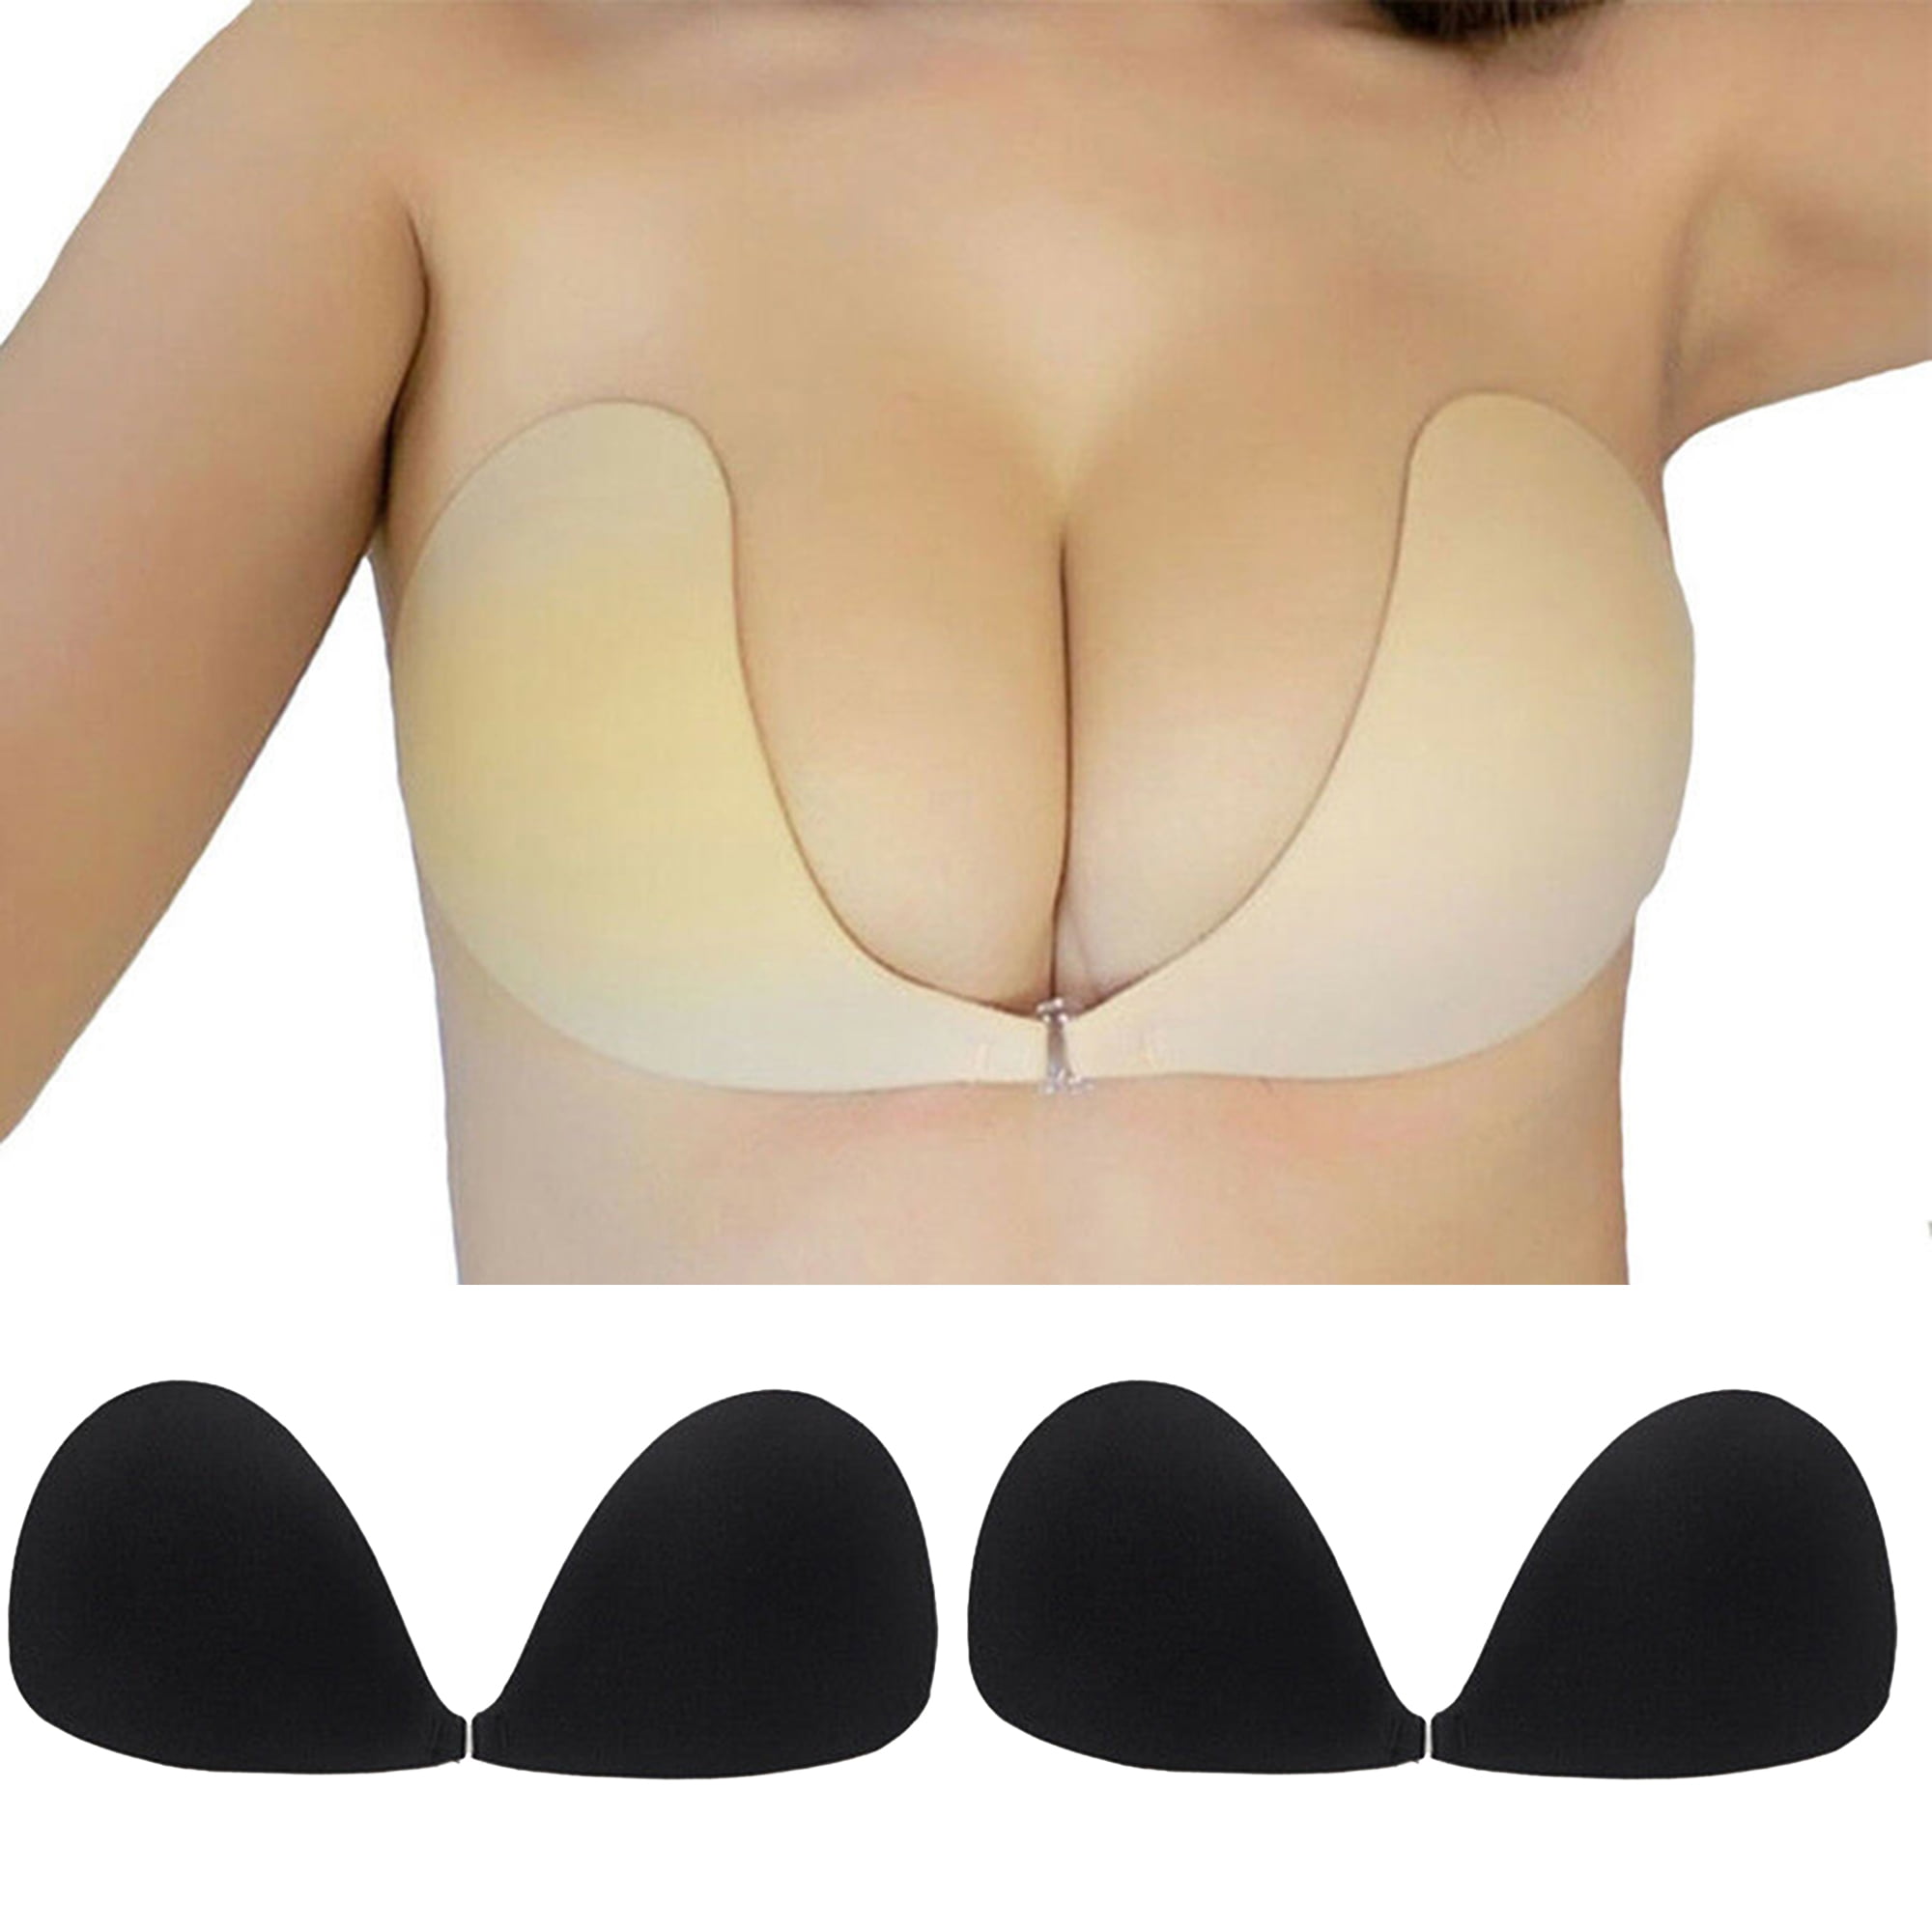 Sticky Bra Push Up Strapless Bra For Women 2 Pack Adhesive Bra